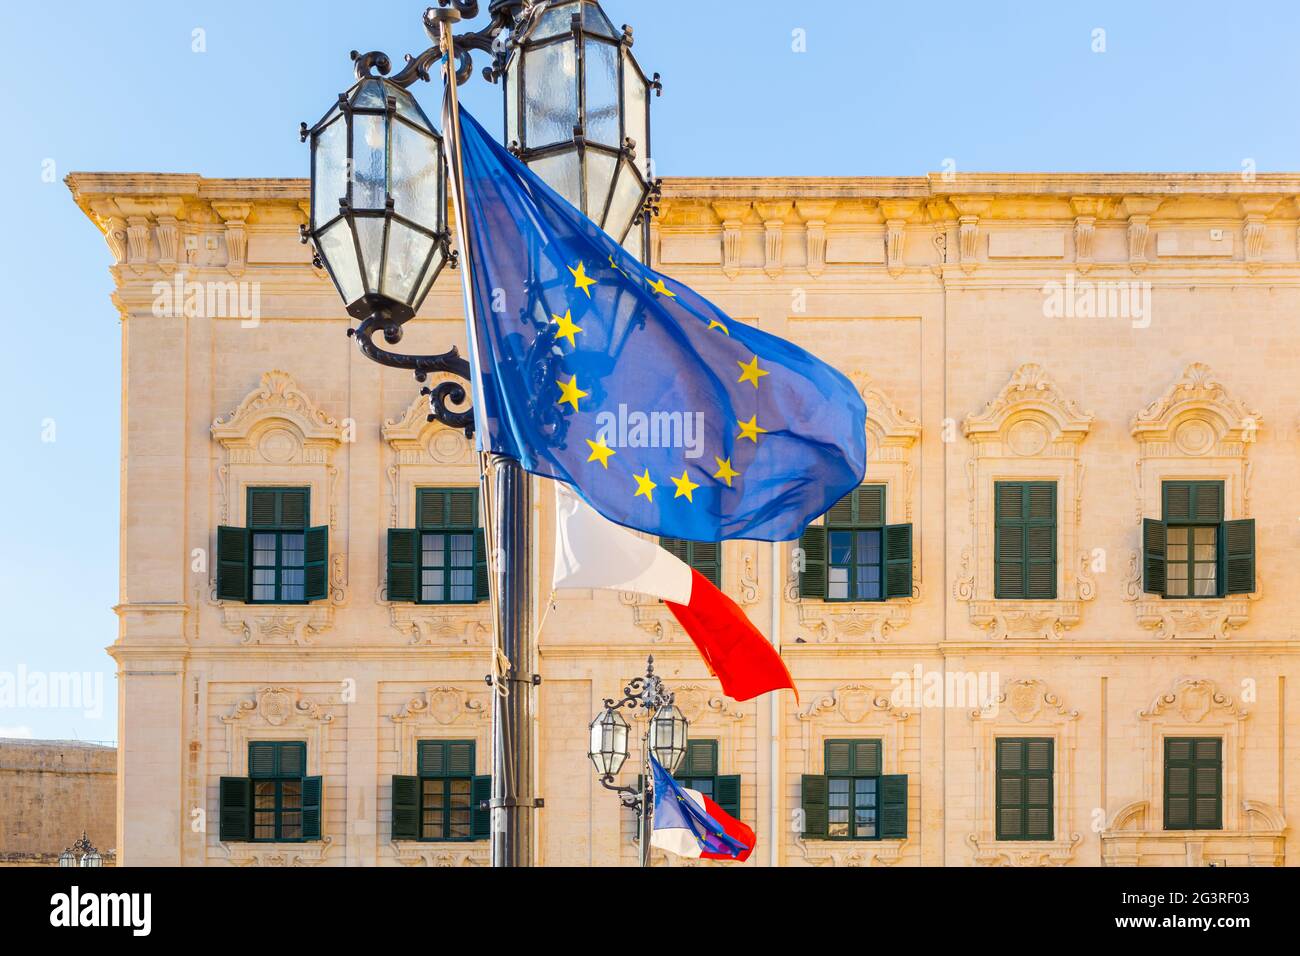 Malte, Valetta, Auberge de Castille - Bâtiment du gouvernement, Maison du Premier ministre, drapeau de l'UE, politique Banque D'Images